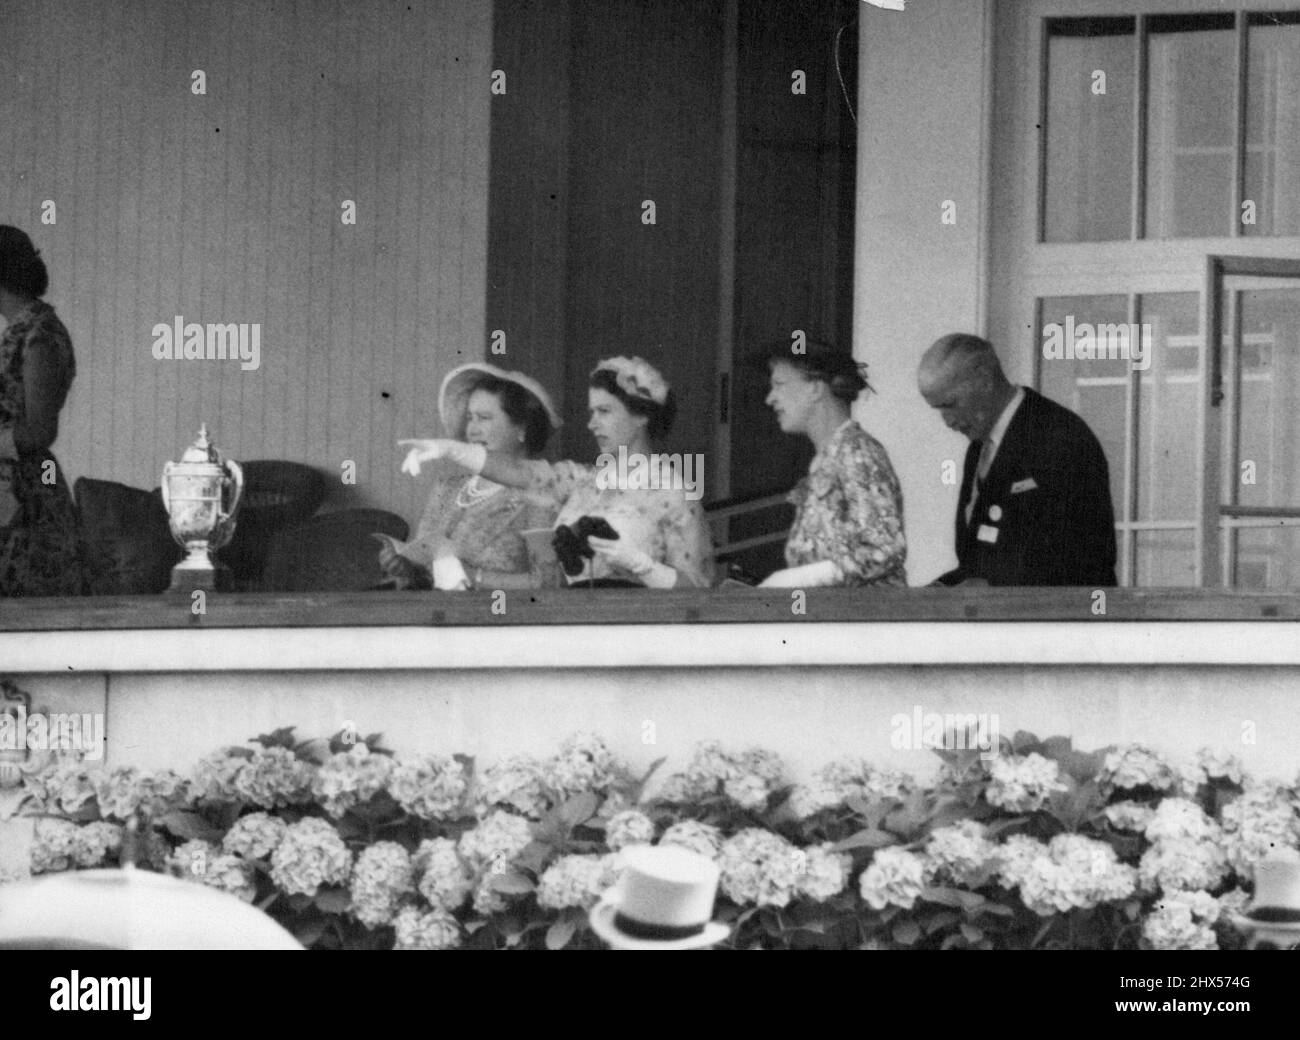 Le Queens choisit Un gagnant - la reine Elizabeth souligne son choix pour la coupe d'or d'ascot aujourd'hui à la reine Elizabeth la reine mère (à gauche) et à la princesse royale. La coupe d'or, vue à gauche, a été gagnée par le cheval italien Botticelli, propriété de l'Incisa Della Rocchetta du marché. 13 juillet 1955. (Photo de Paul Popper, Paul Popper Ltd.). Banque D'Images